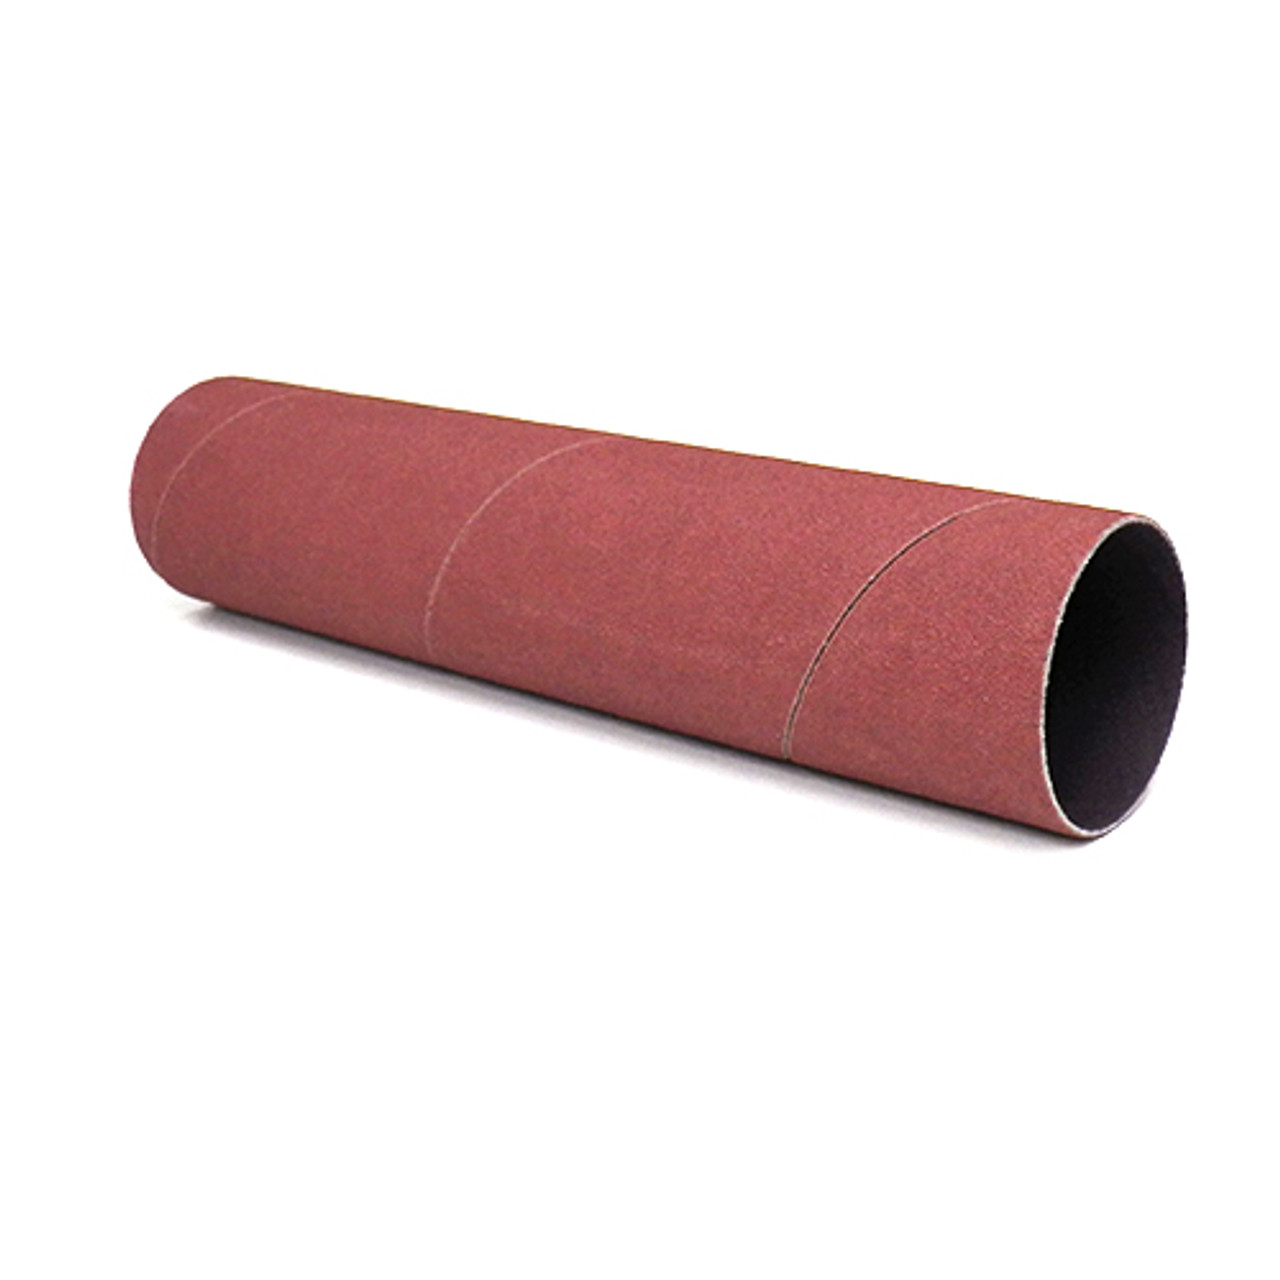 Klingspor Abrasives Aluminum Oxide Sanding Sleeves, 2"x 9" 60 Grit, 1pk